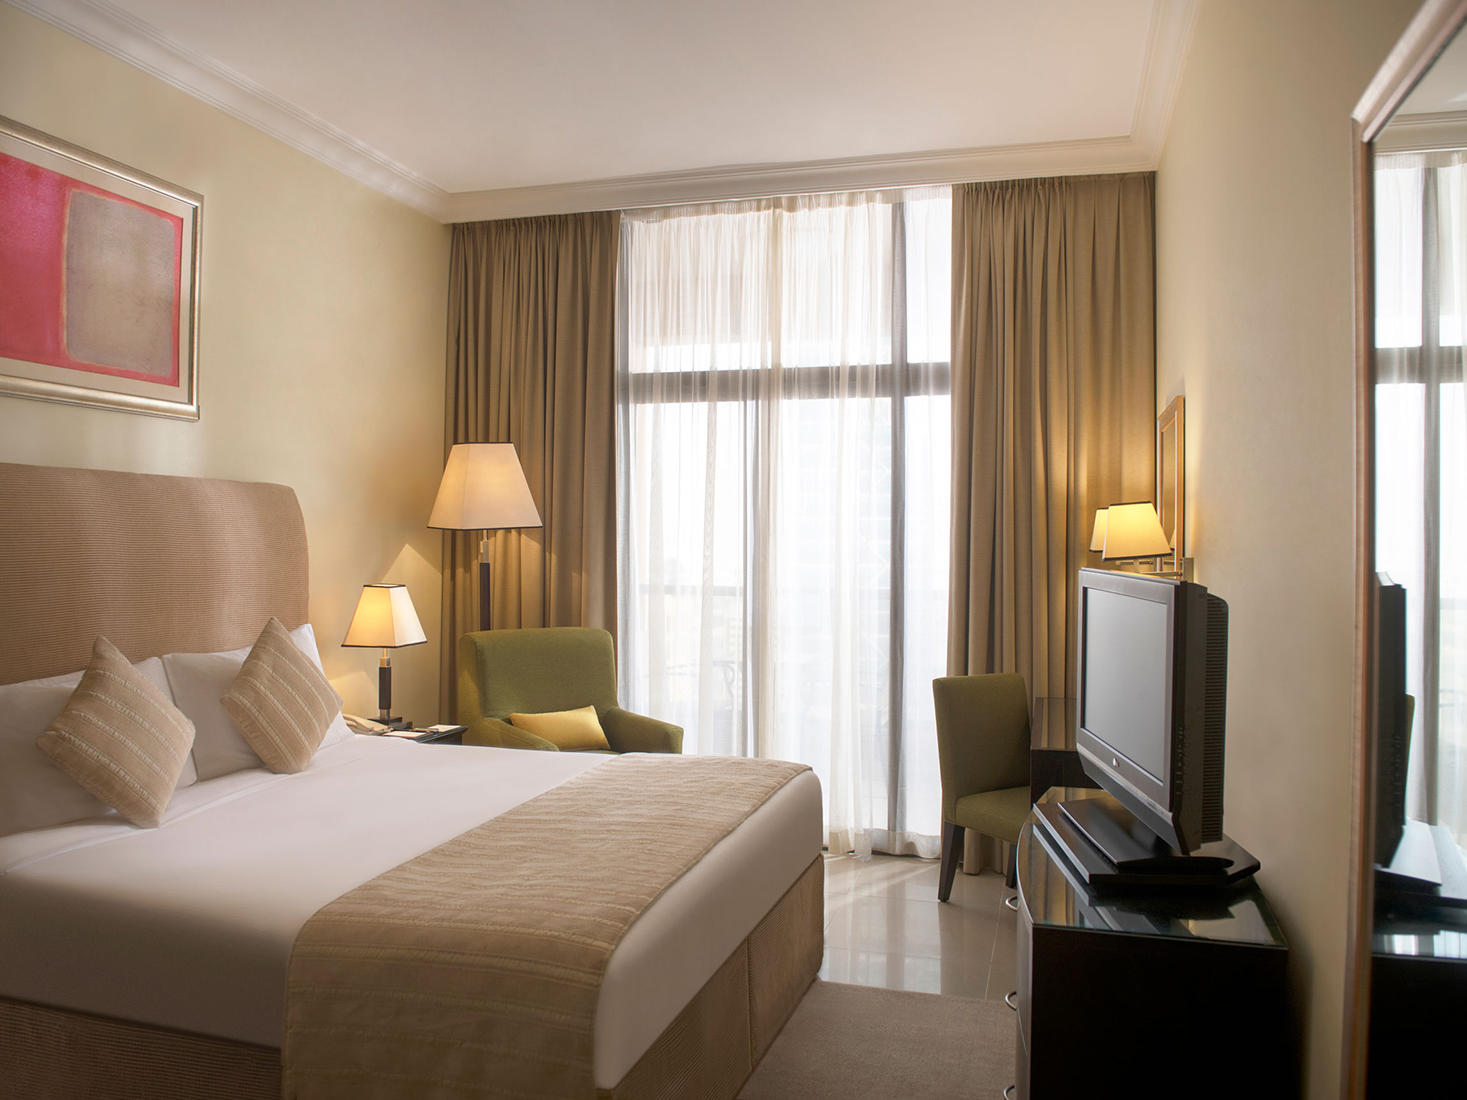 إقامة مريحة في دبي | تو سيزنز فندق وشقق فندقية 4 نجوم في دبي